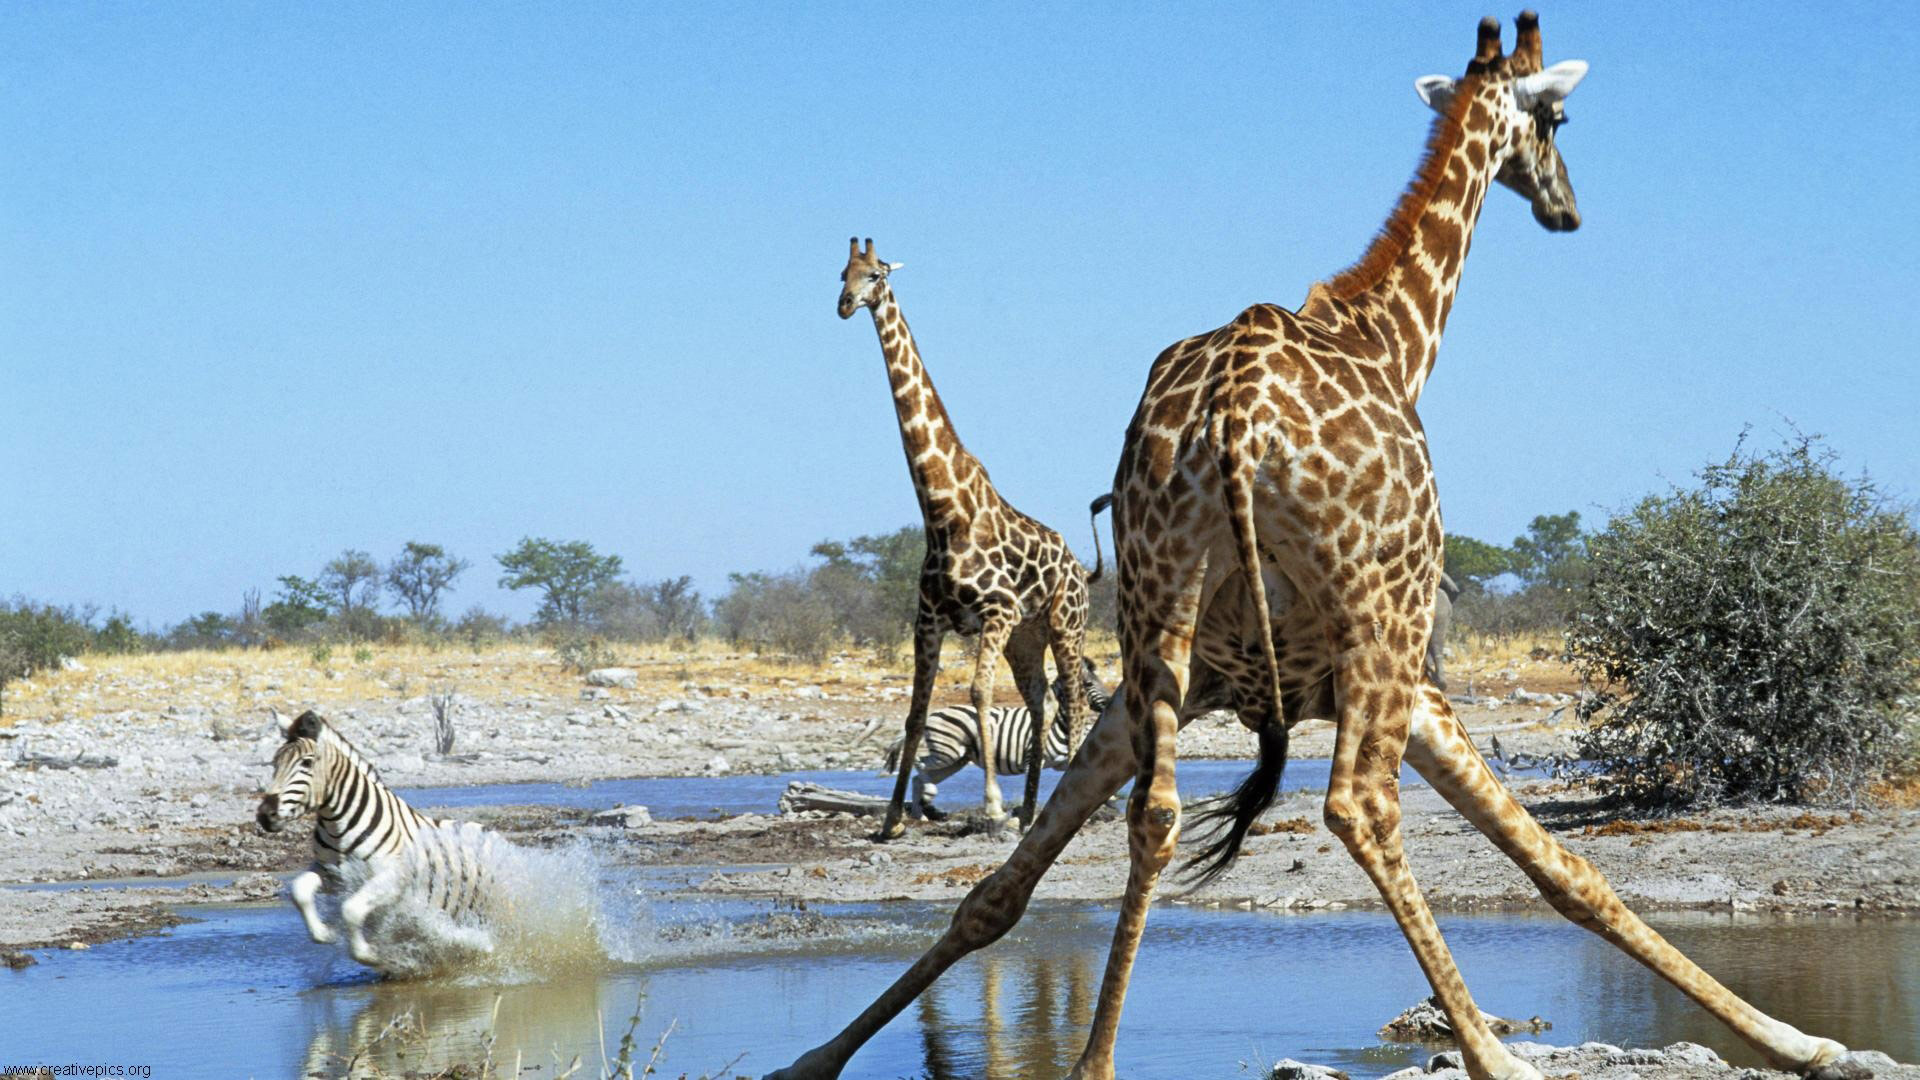 una giraffa balza fuori dalla pozza dove si stanno abbeverando 2 giraffe